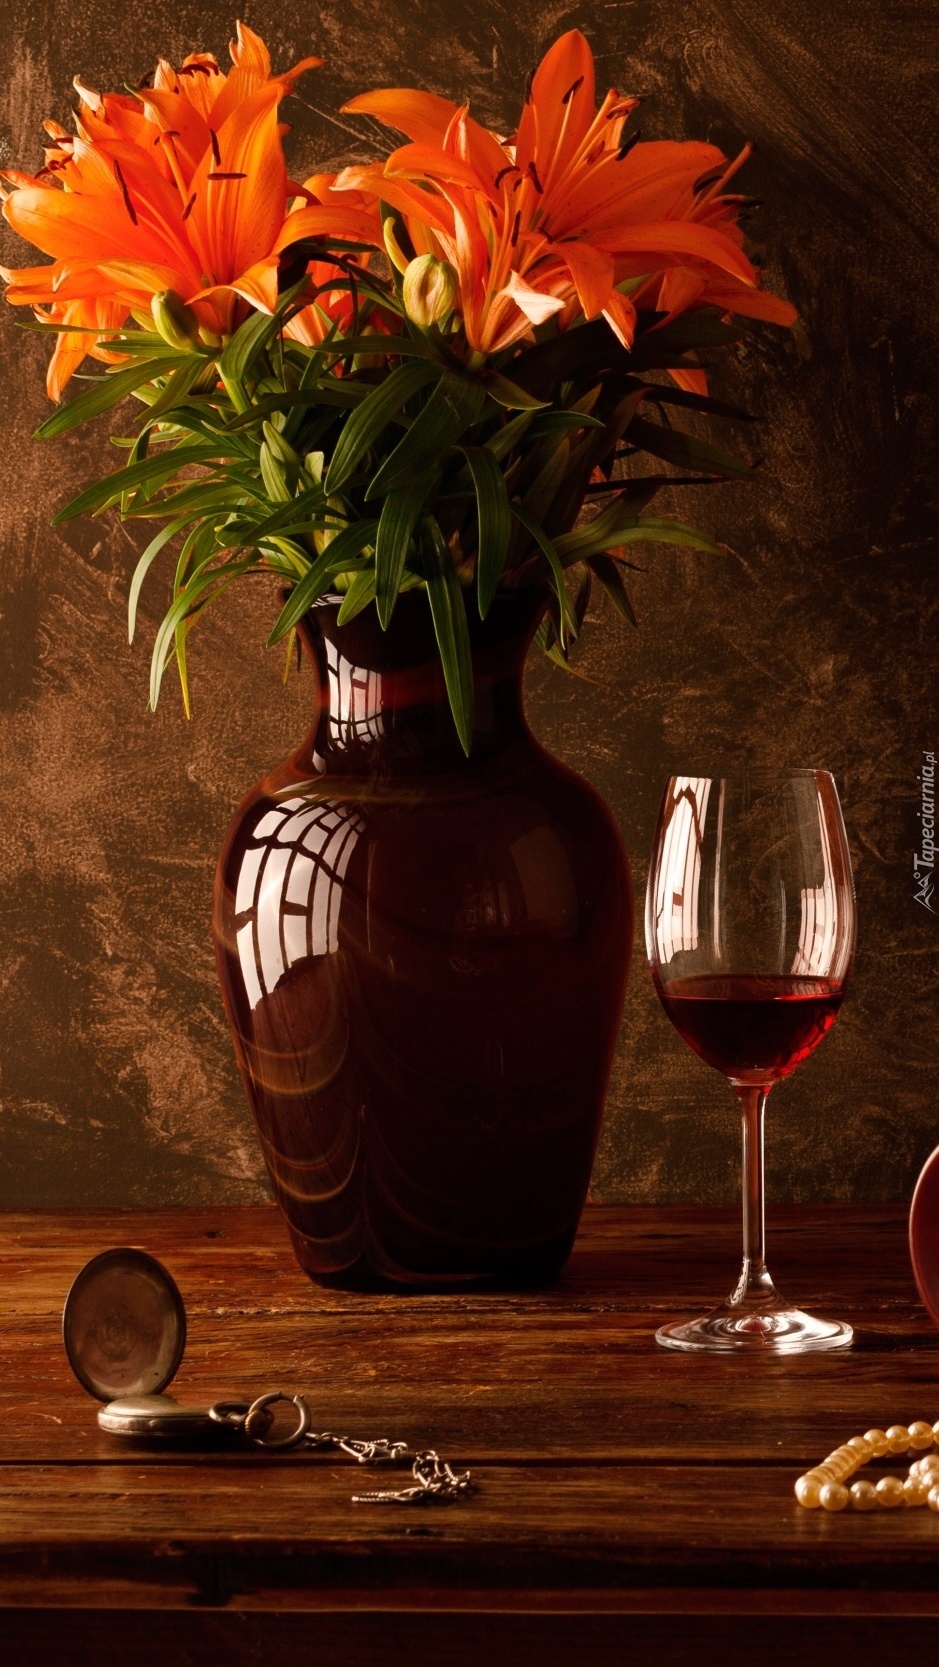 Lilie w wazonie obok kieliszka wina i zegarka